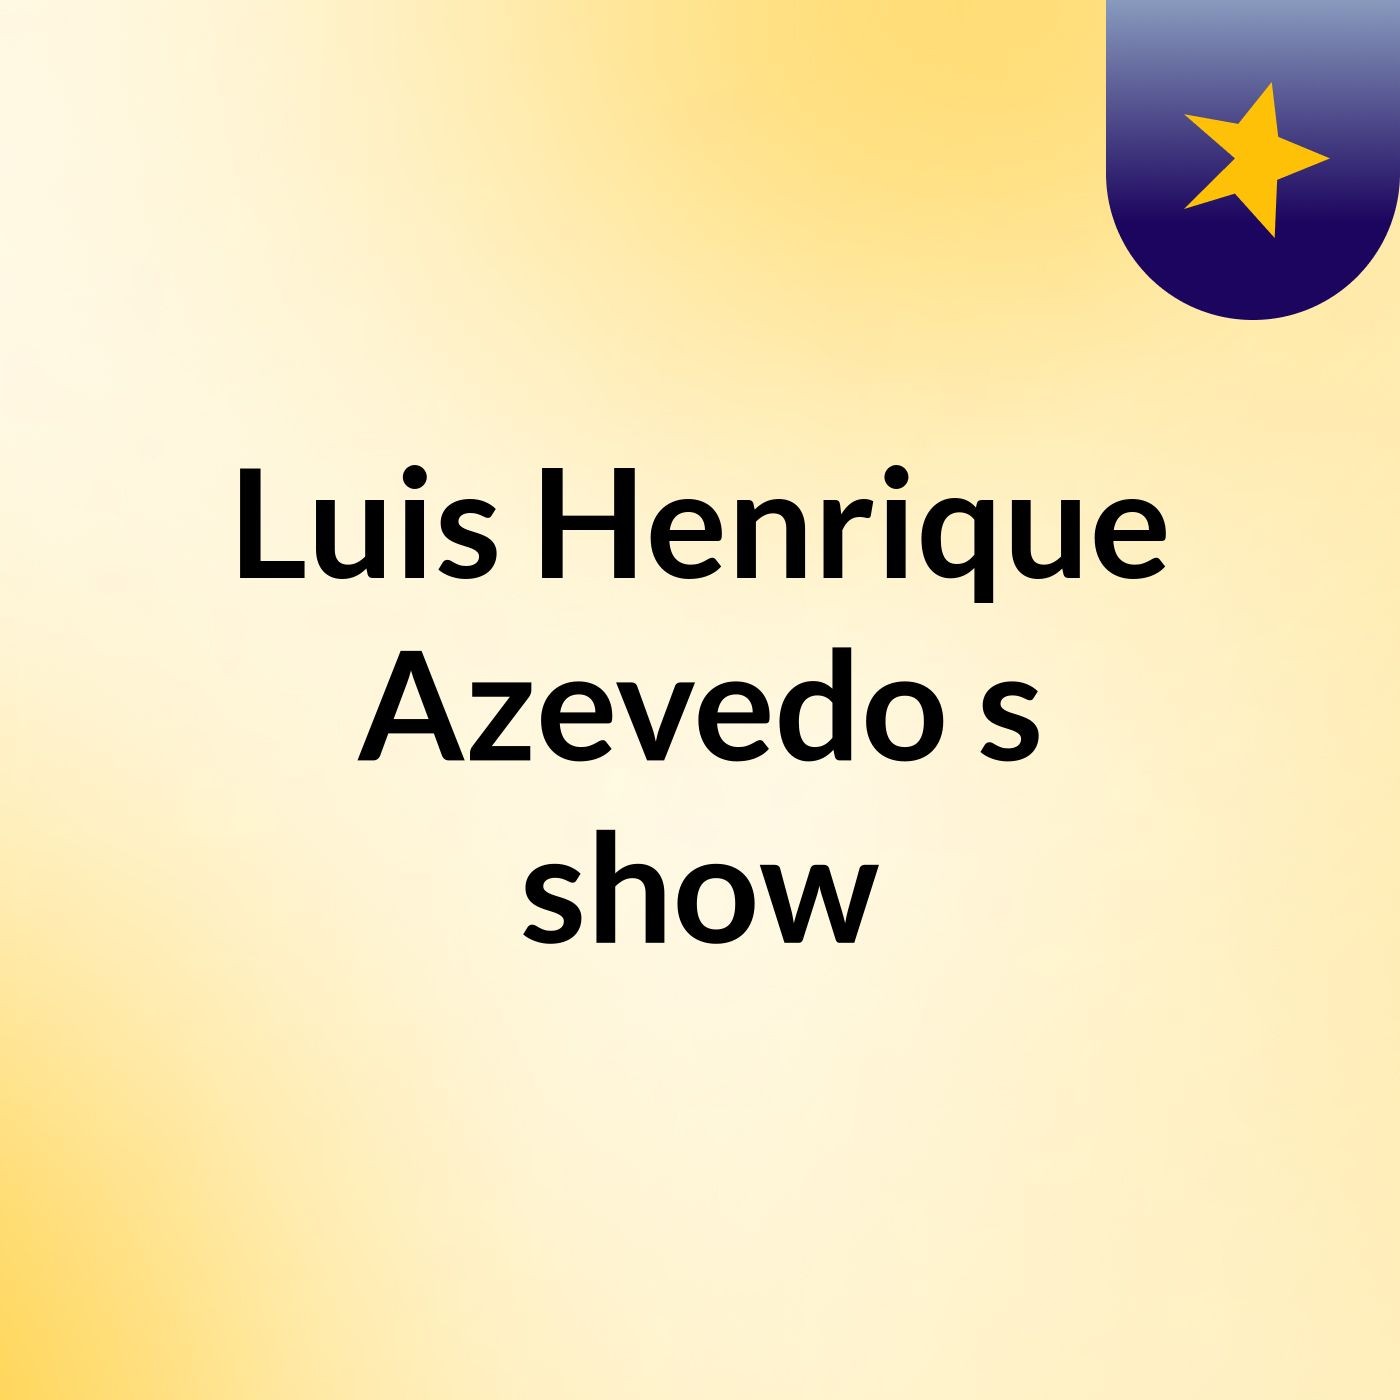 Luis Henrique Azevedo's show